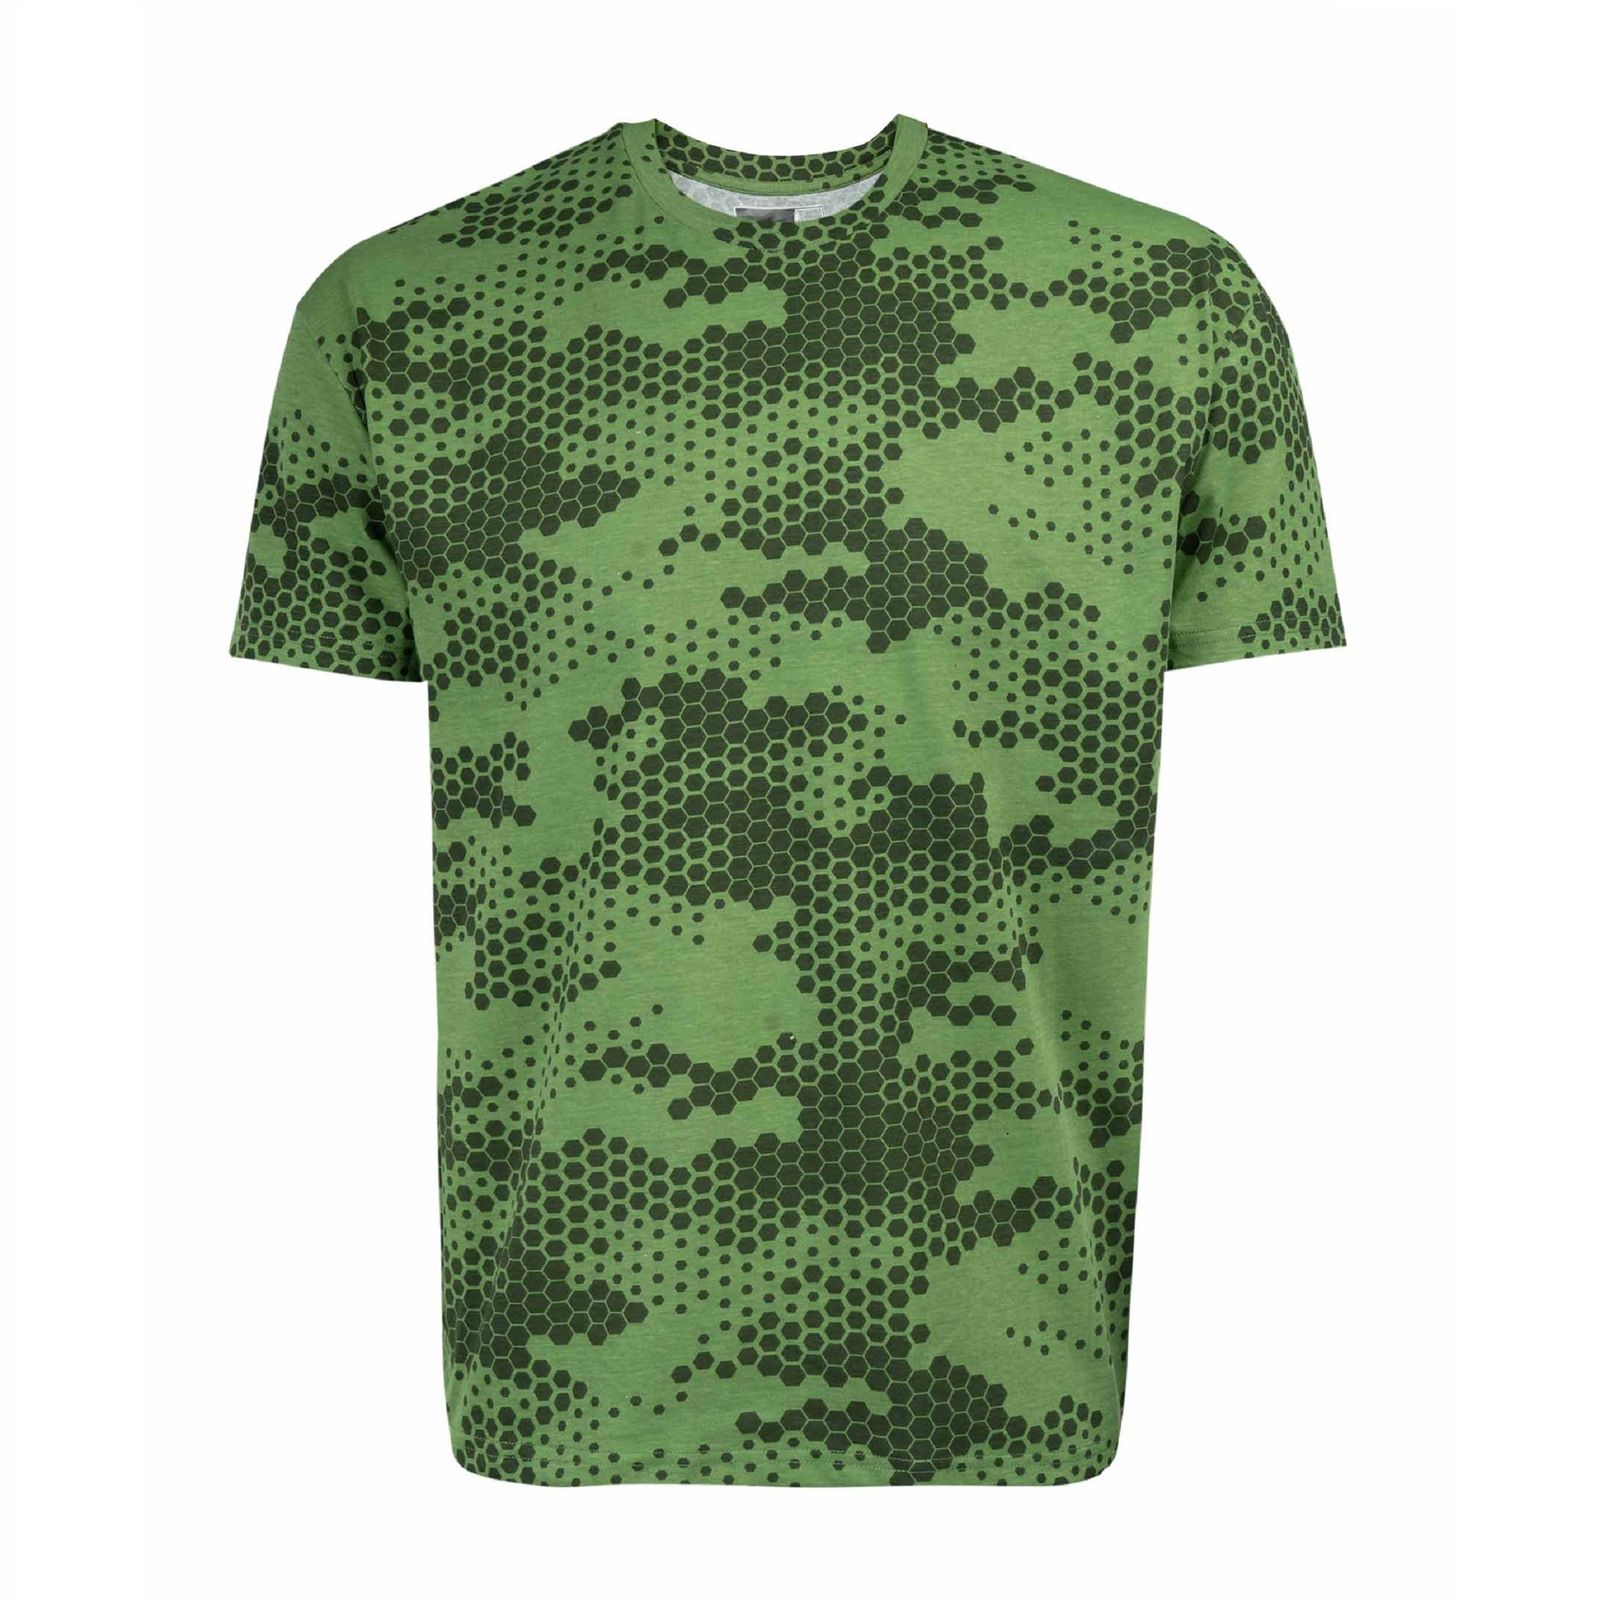 تی شرت آستین کوتاه مردانه جوتی جینز مدل یقه گرد کد 1551136 رنگ سبز زیتونی -  - 1